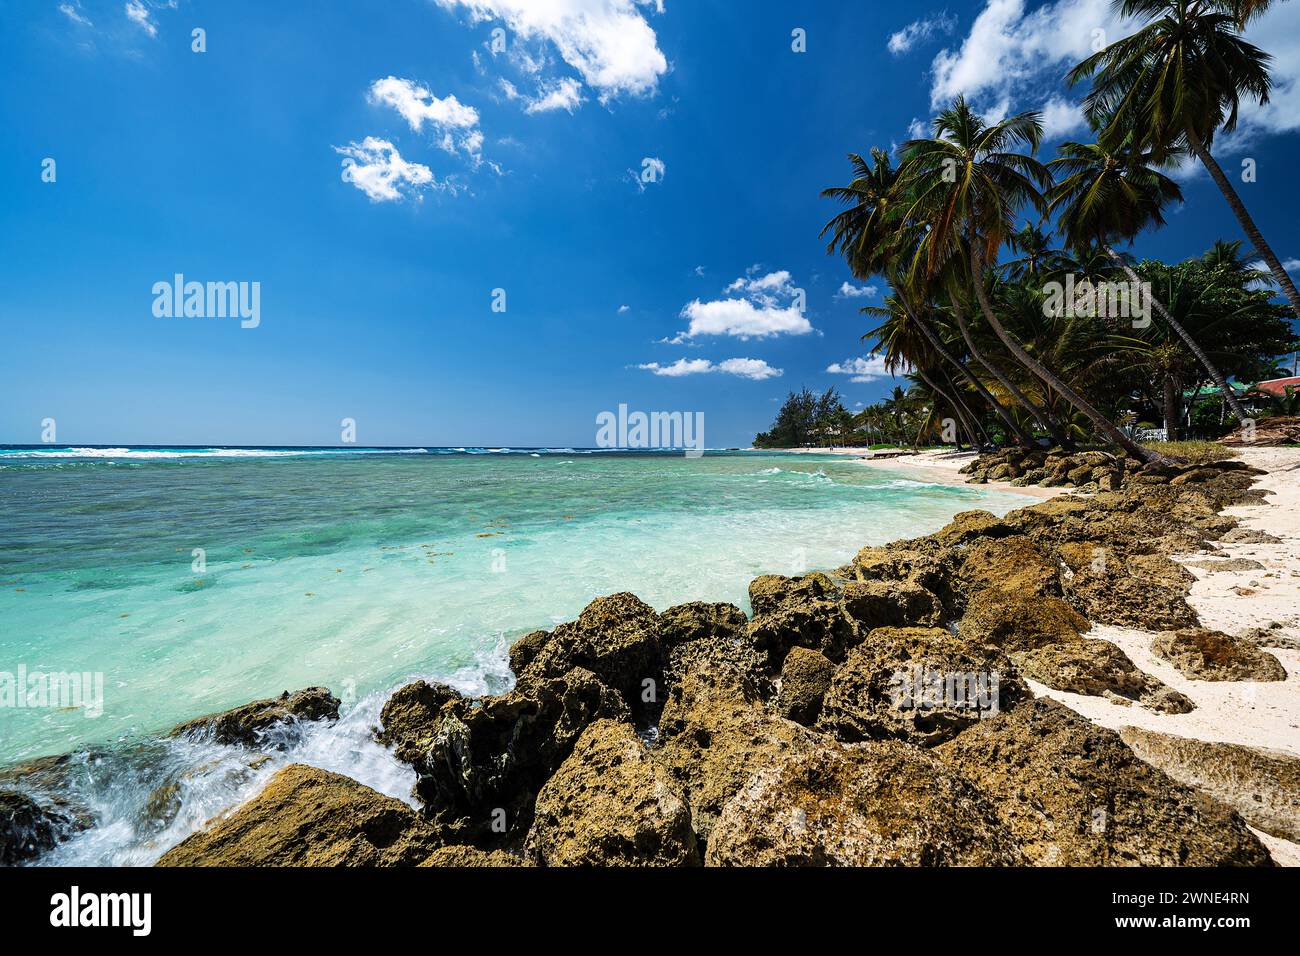 Mare invitante e cristallino e surf schiumoso che lambiscono dolcemente sulle splendide sabbie morbide di Rockley Beach, Barbados. Foto Stock